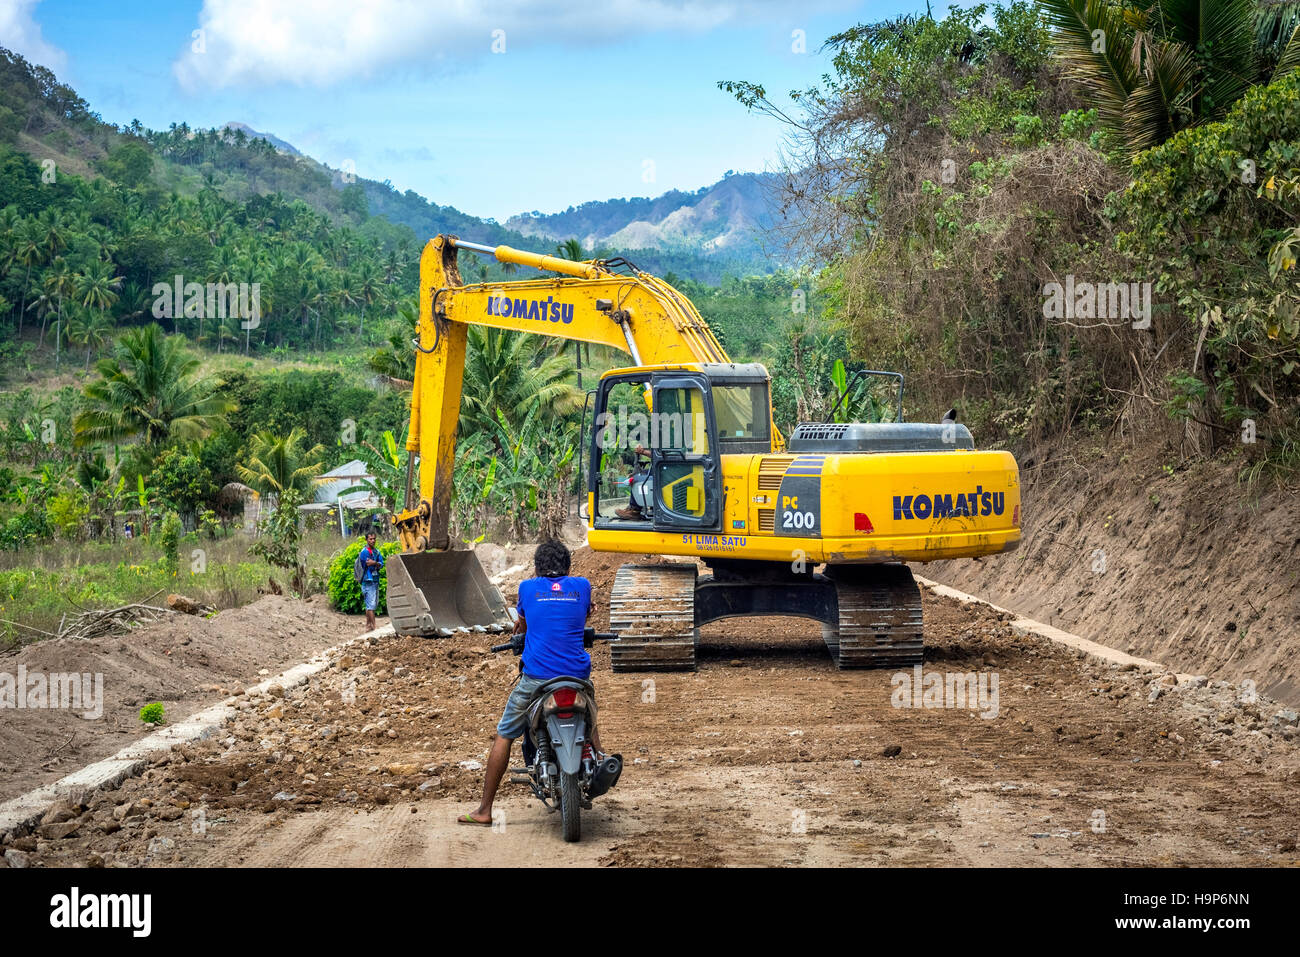 Ein Hydraulikbagger wird für die Landschaftsgestaltung auf einer Baustelle für Straßen in der Nähe von Atadei in Lembata, East Nusa Tenggara, Indonesien, verwendet. Stockfoto